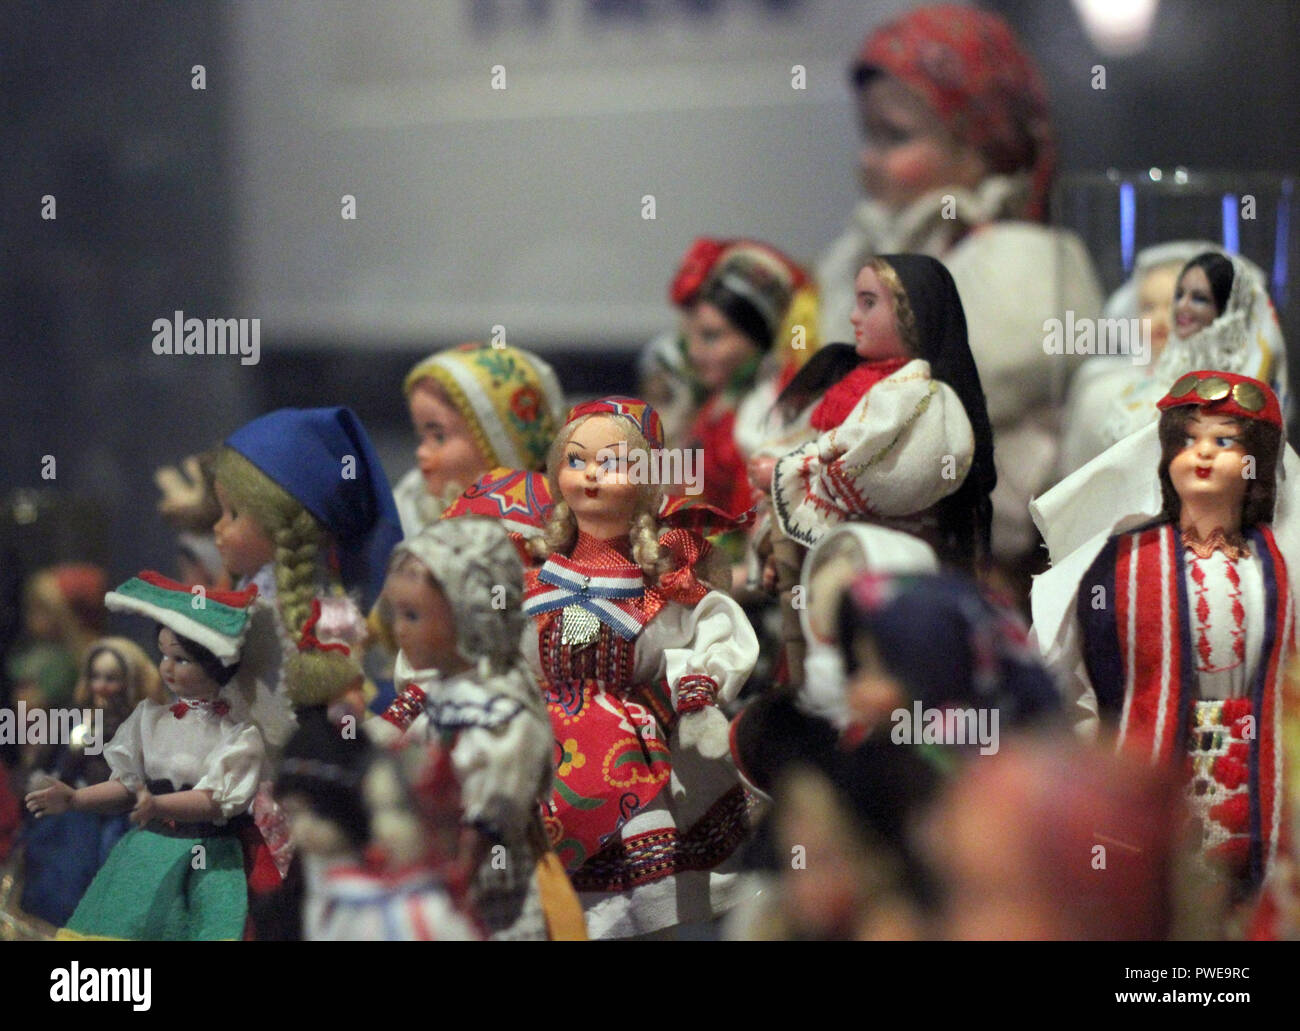 16 octobre 2018, l'Autriche, Vienne : nombreux costumes traditionnels des  poupées au foulard sont en exposition dans l'exposition 'Veillt, dévoile !  Le foulard' sur l'histoire culturelle du foulard dans le musée du